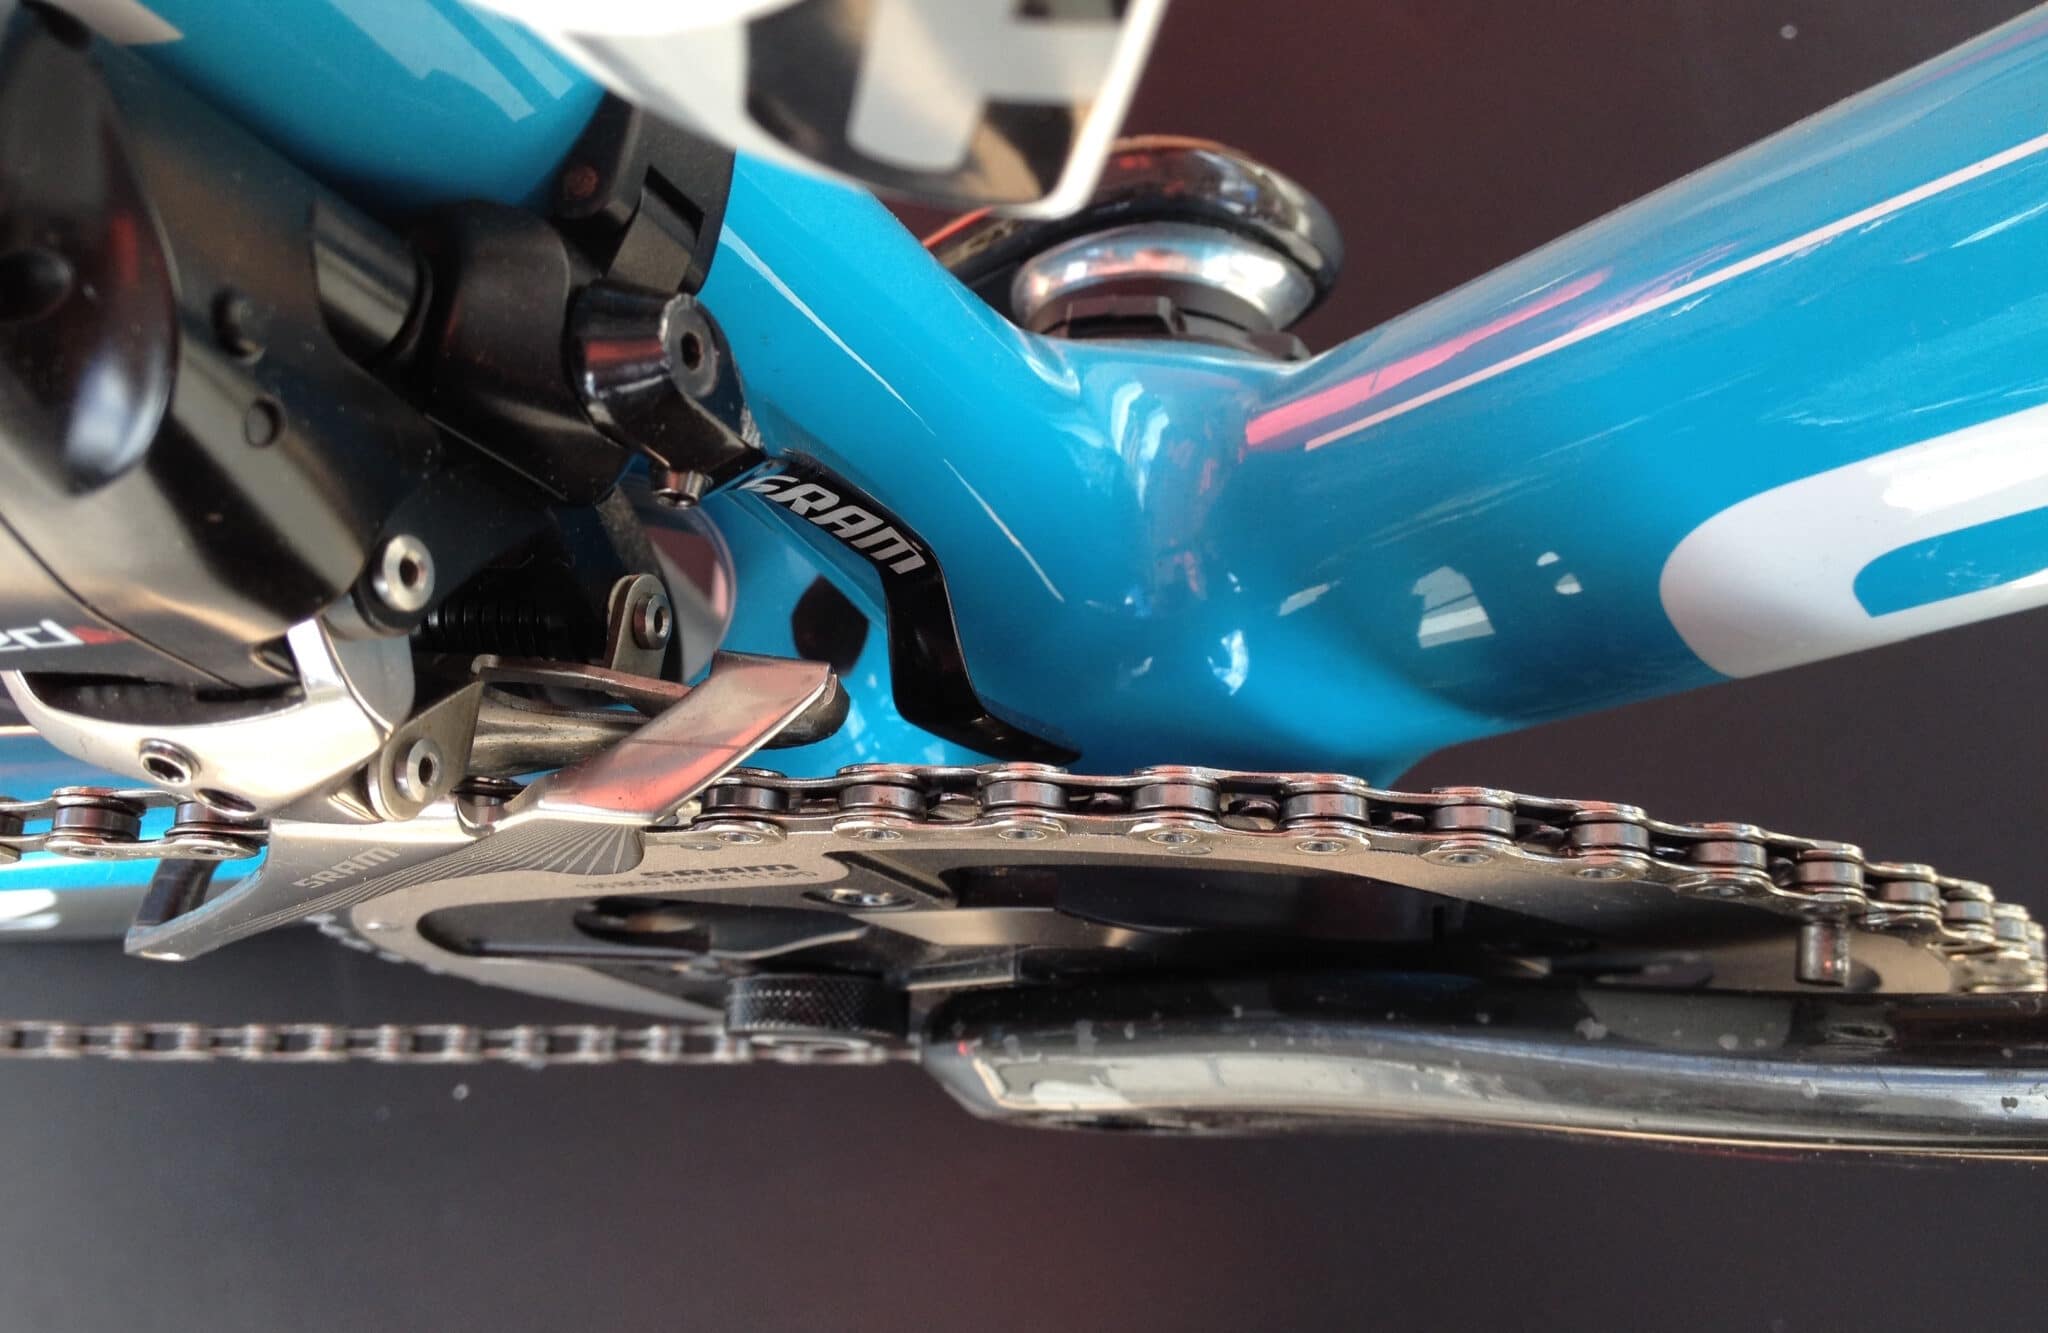 Comment bien nettoyer sa chaîne vélo ?